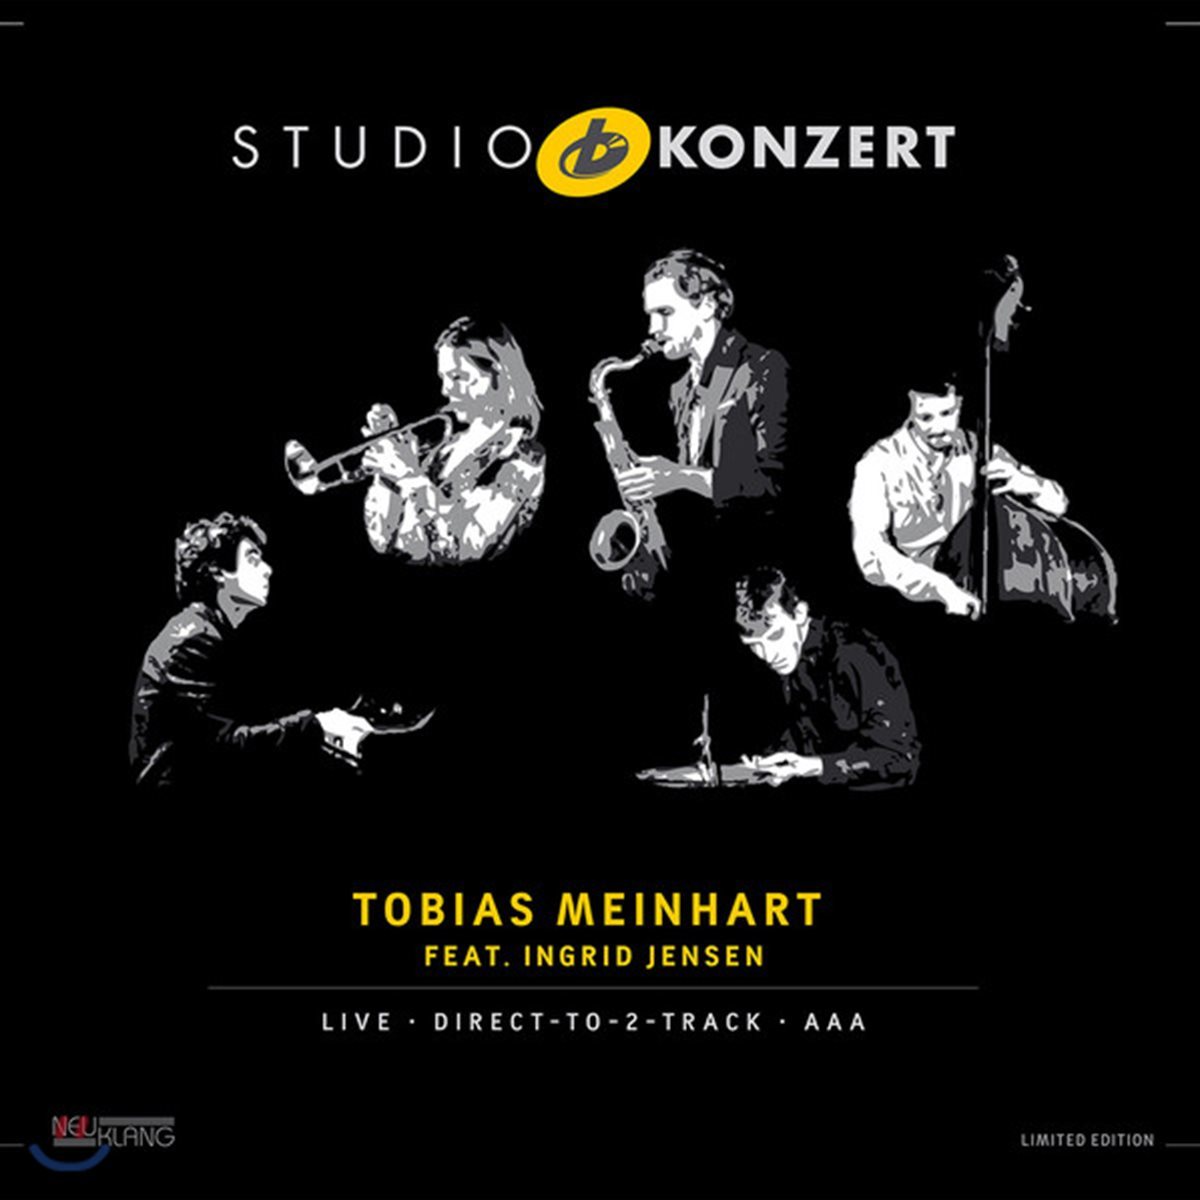 Tobias Meinhart &amp; Ingrid Jensen - Studio Konzert [Limited Edition LP]